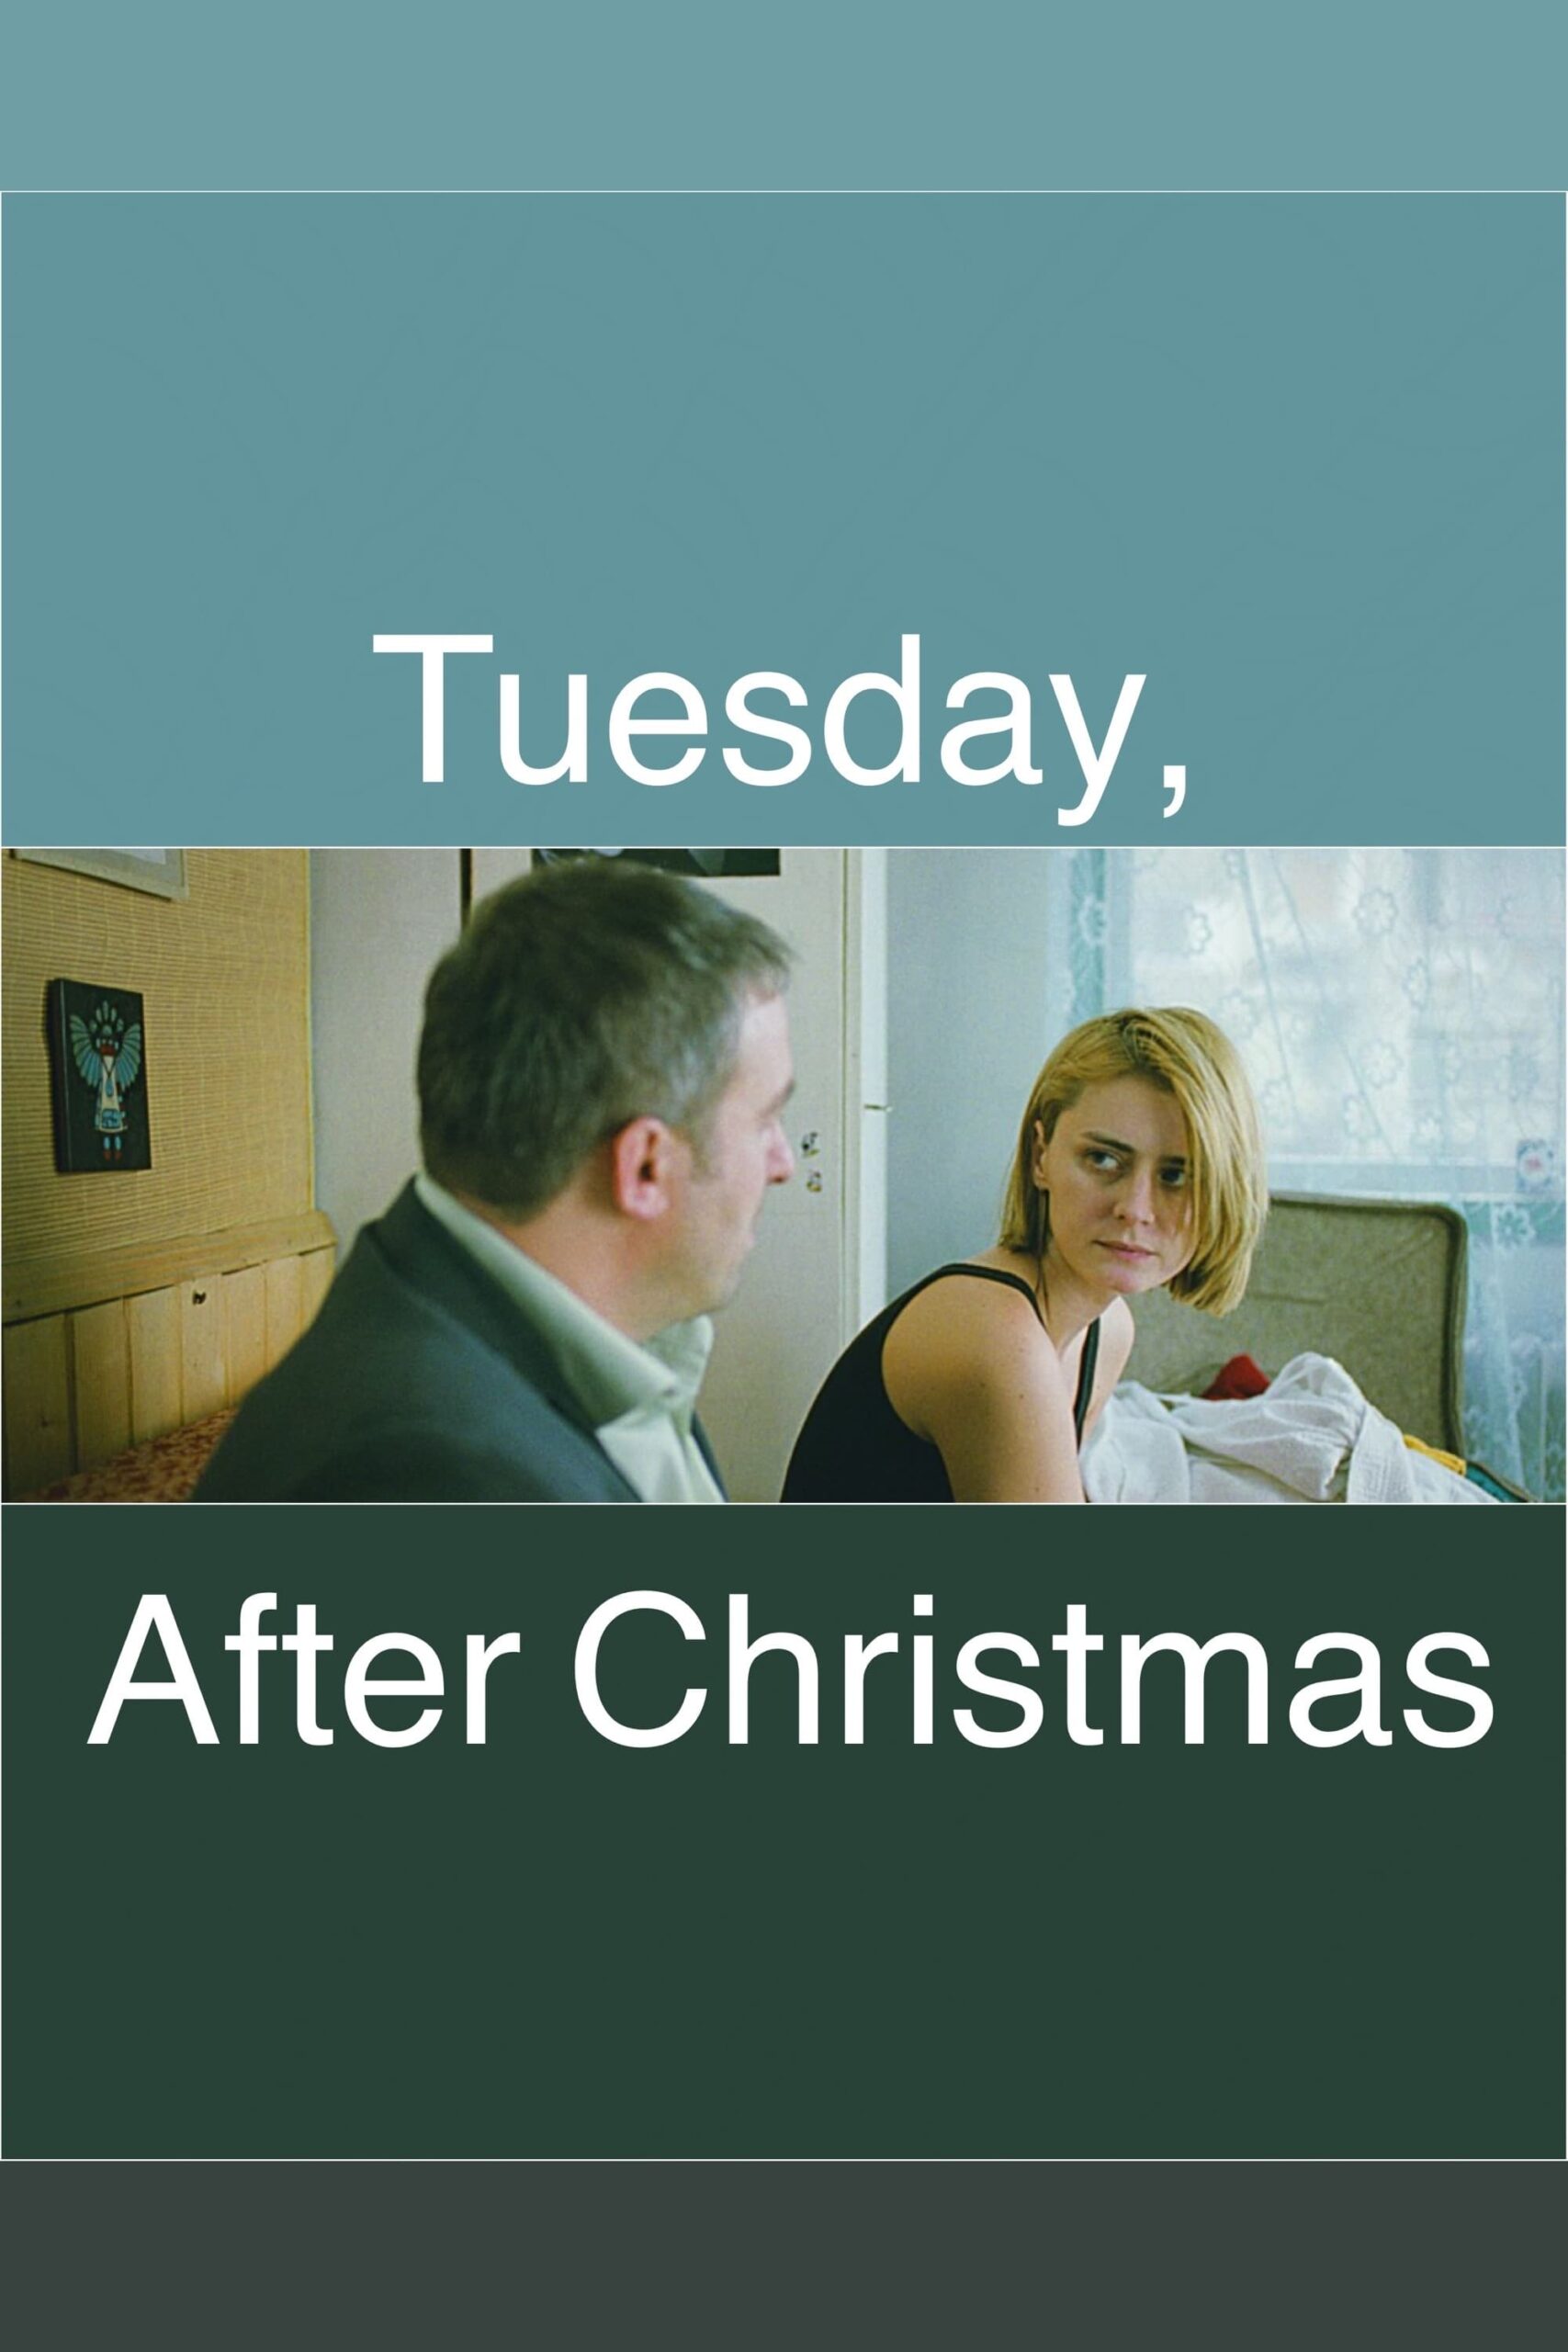 دانلود فیلم Tuesday, After Christmas 2010 با زیرنویس فارسی